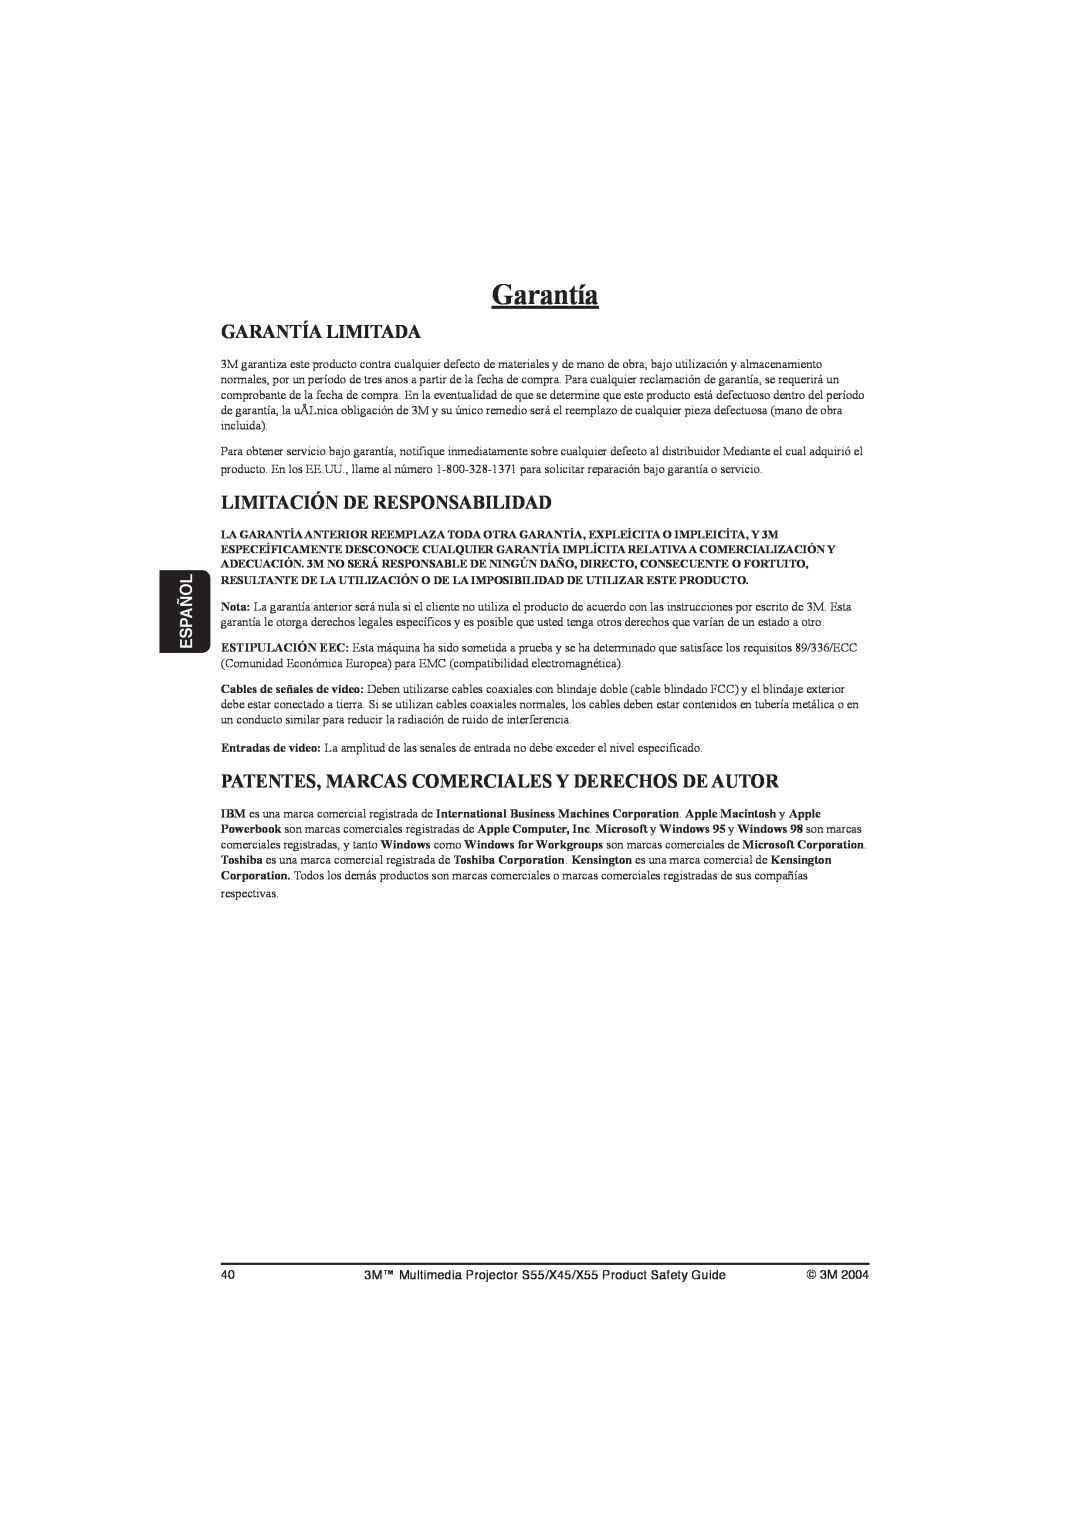 3M S55 Garantía Limitada, Limitación De Responsabilidad, Patentes, Marcas Comerciales Y Derechos De Autor, Español 